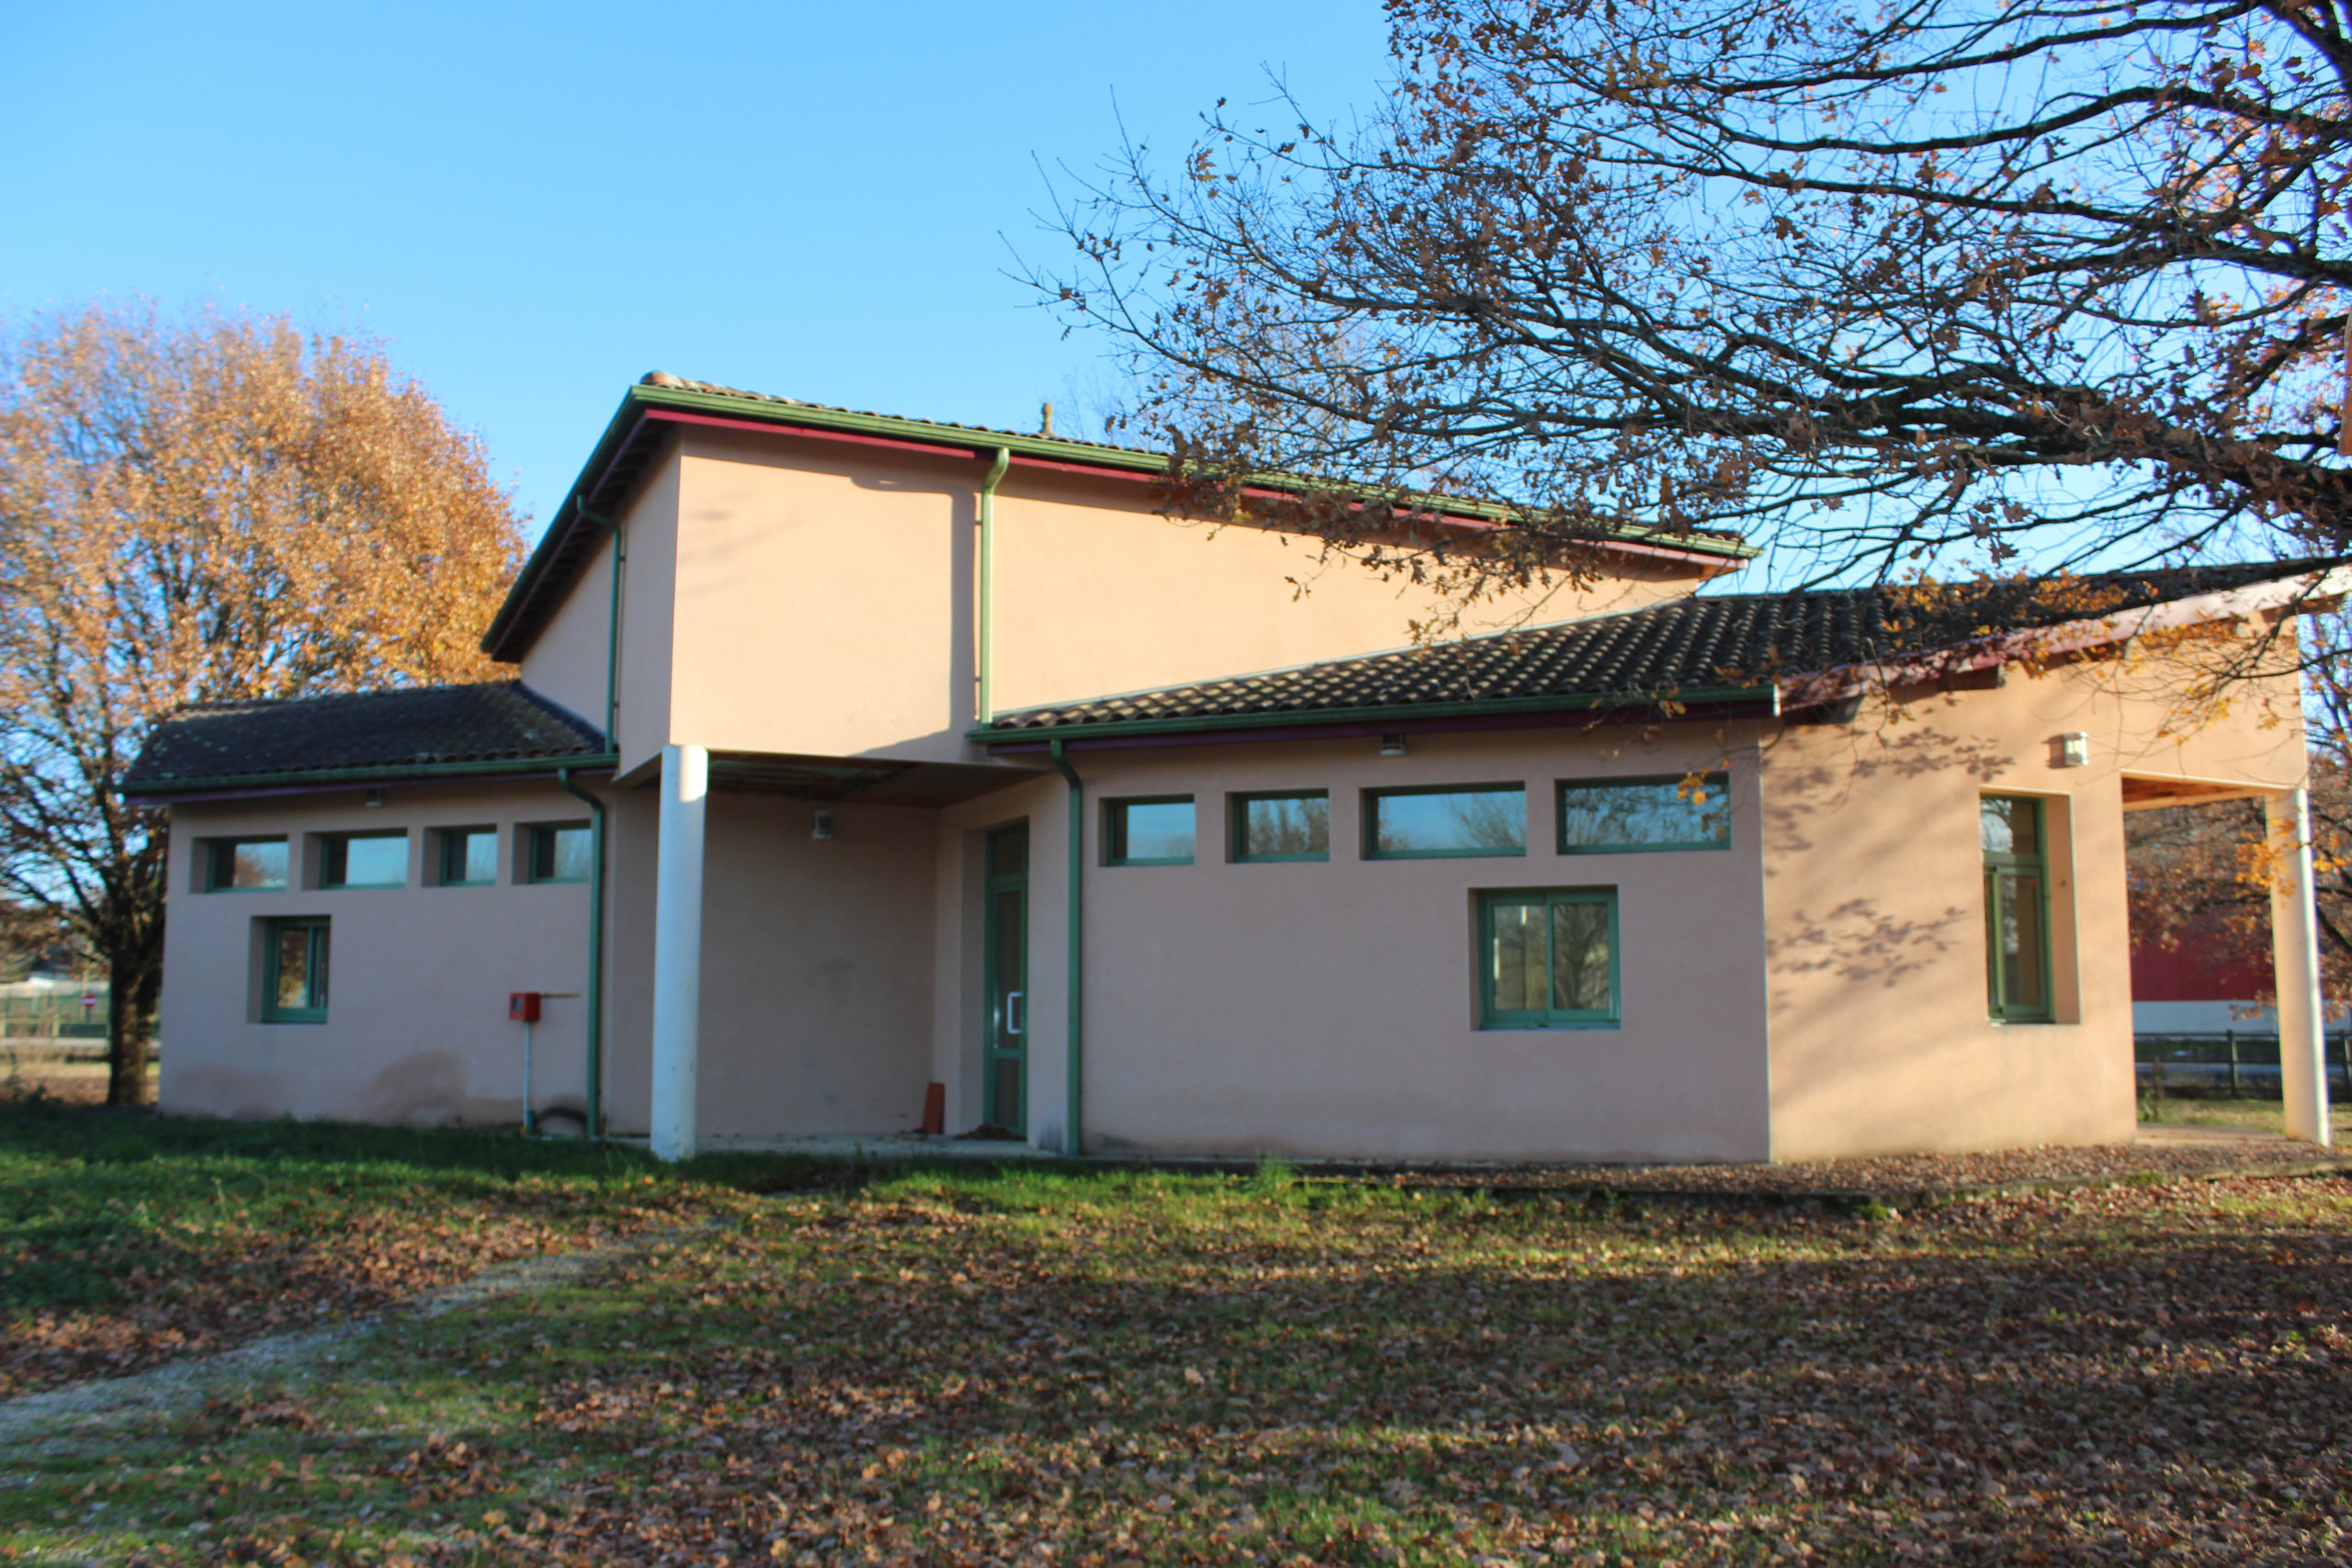 Bureaux (Communauté de communes du Périgord Ribéracois – CCPR)